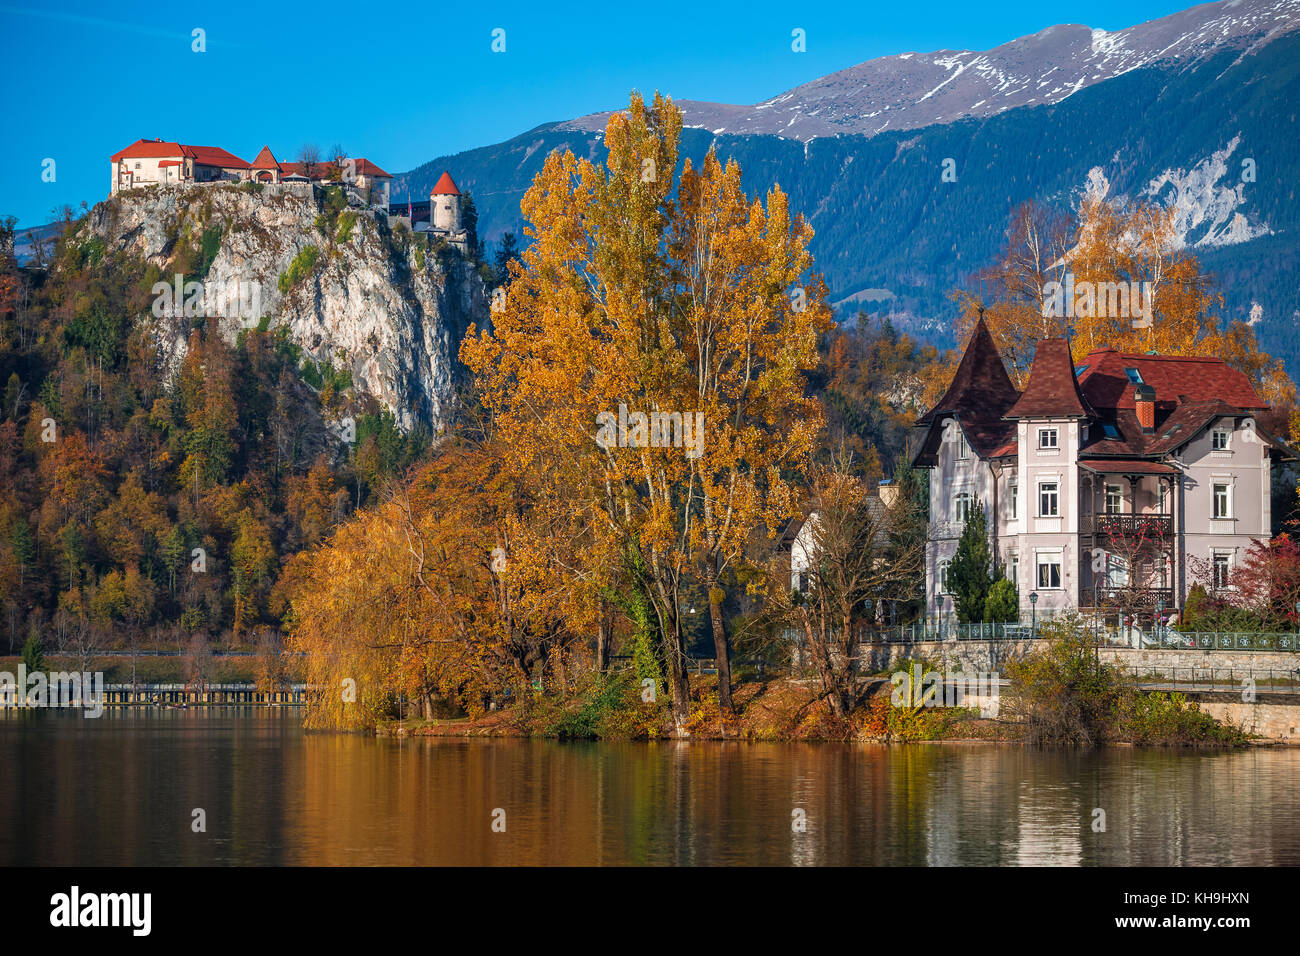 Bled, Slovénie - Beau feuillage orange et arbres à l'automne avec le château de Blad à l'arrière-plan près du lac Bled Banque D'Images